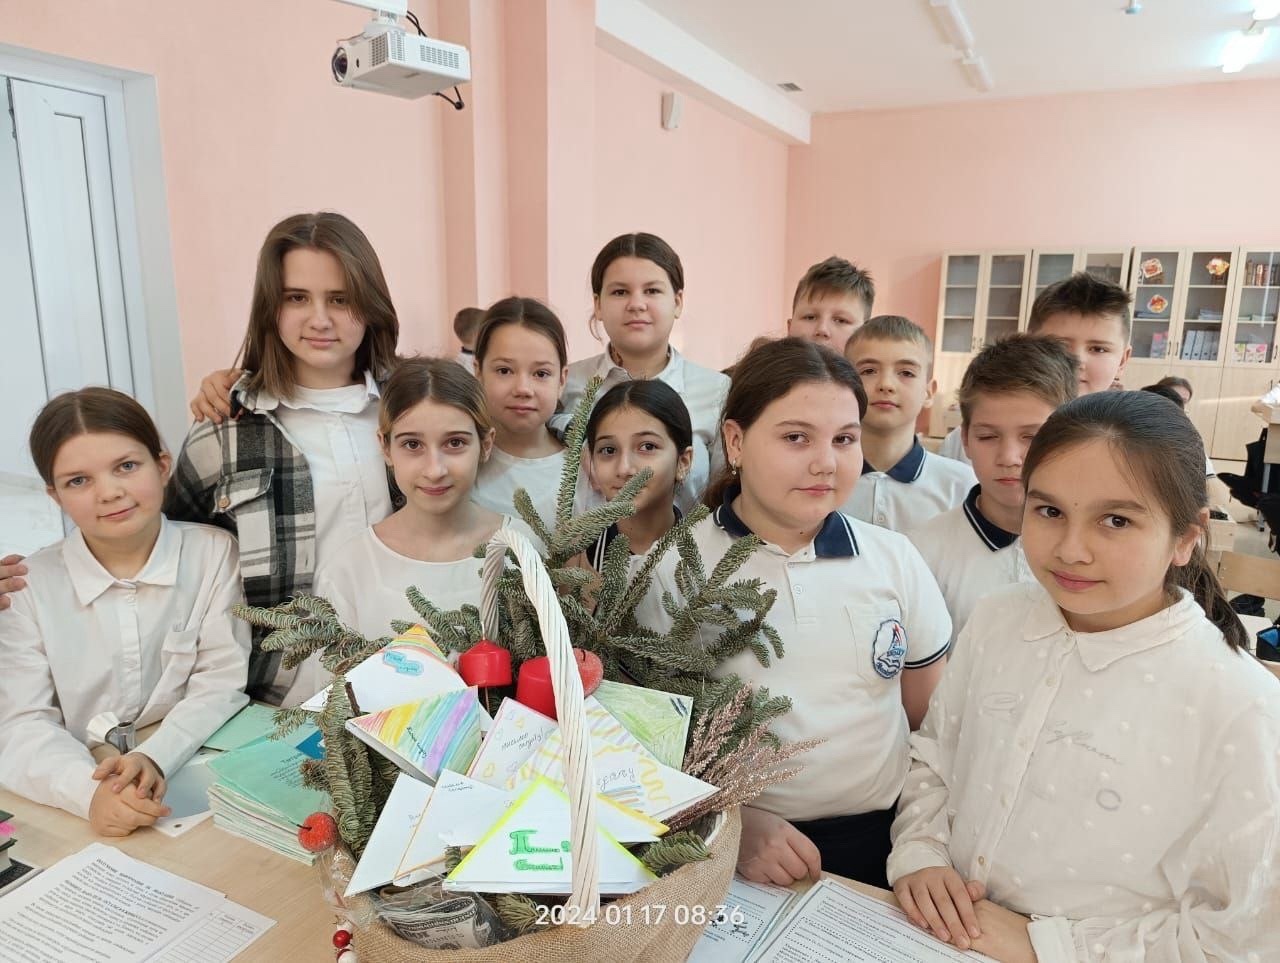 МБОУ СОШ № 23 Михайловск ребята школы пишут письма солдатам, отдавая тепло своего сердца.